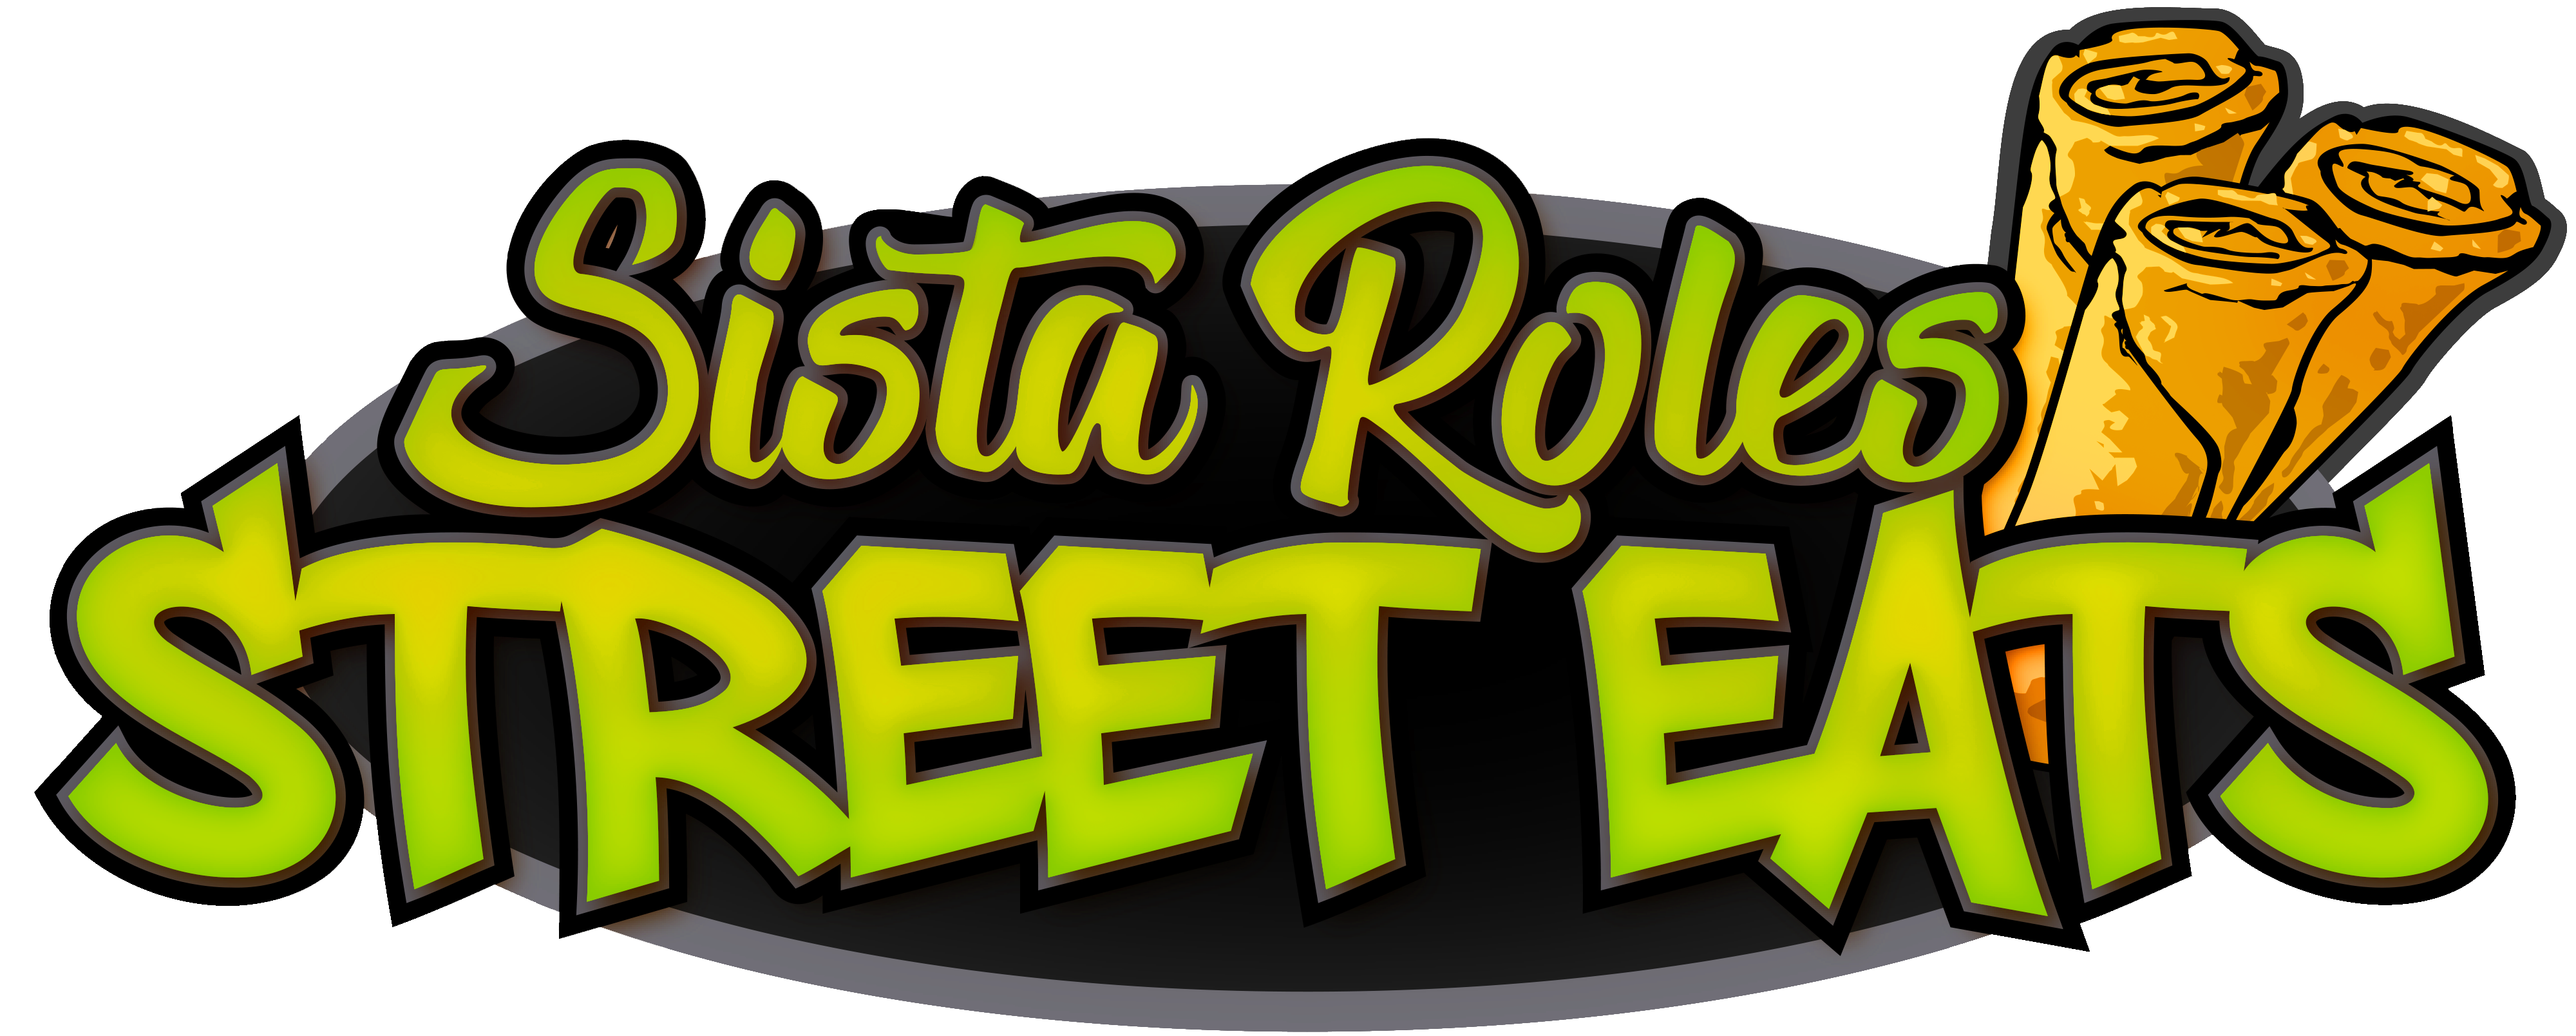 Sista Roles Street Eats